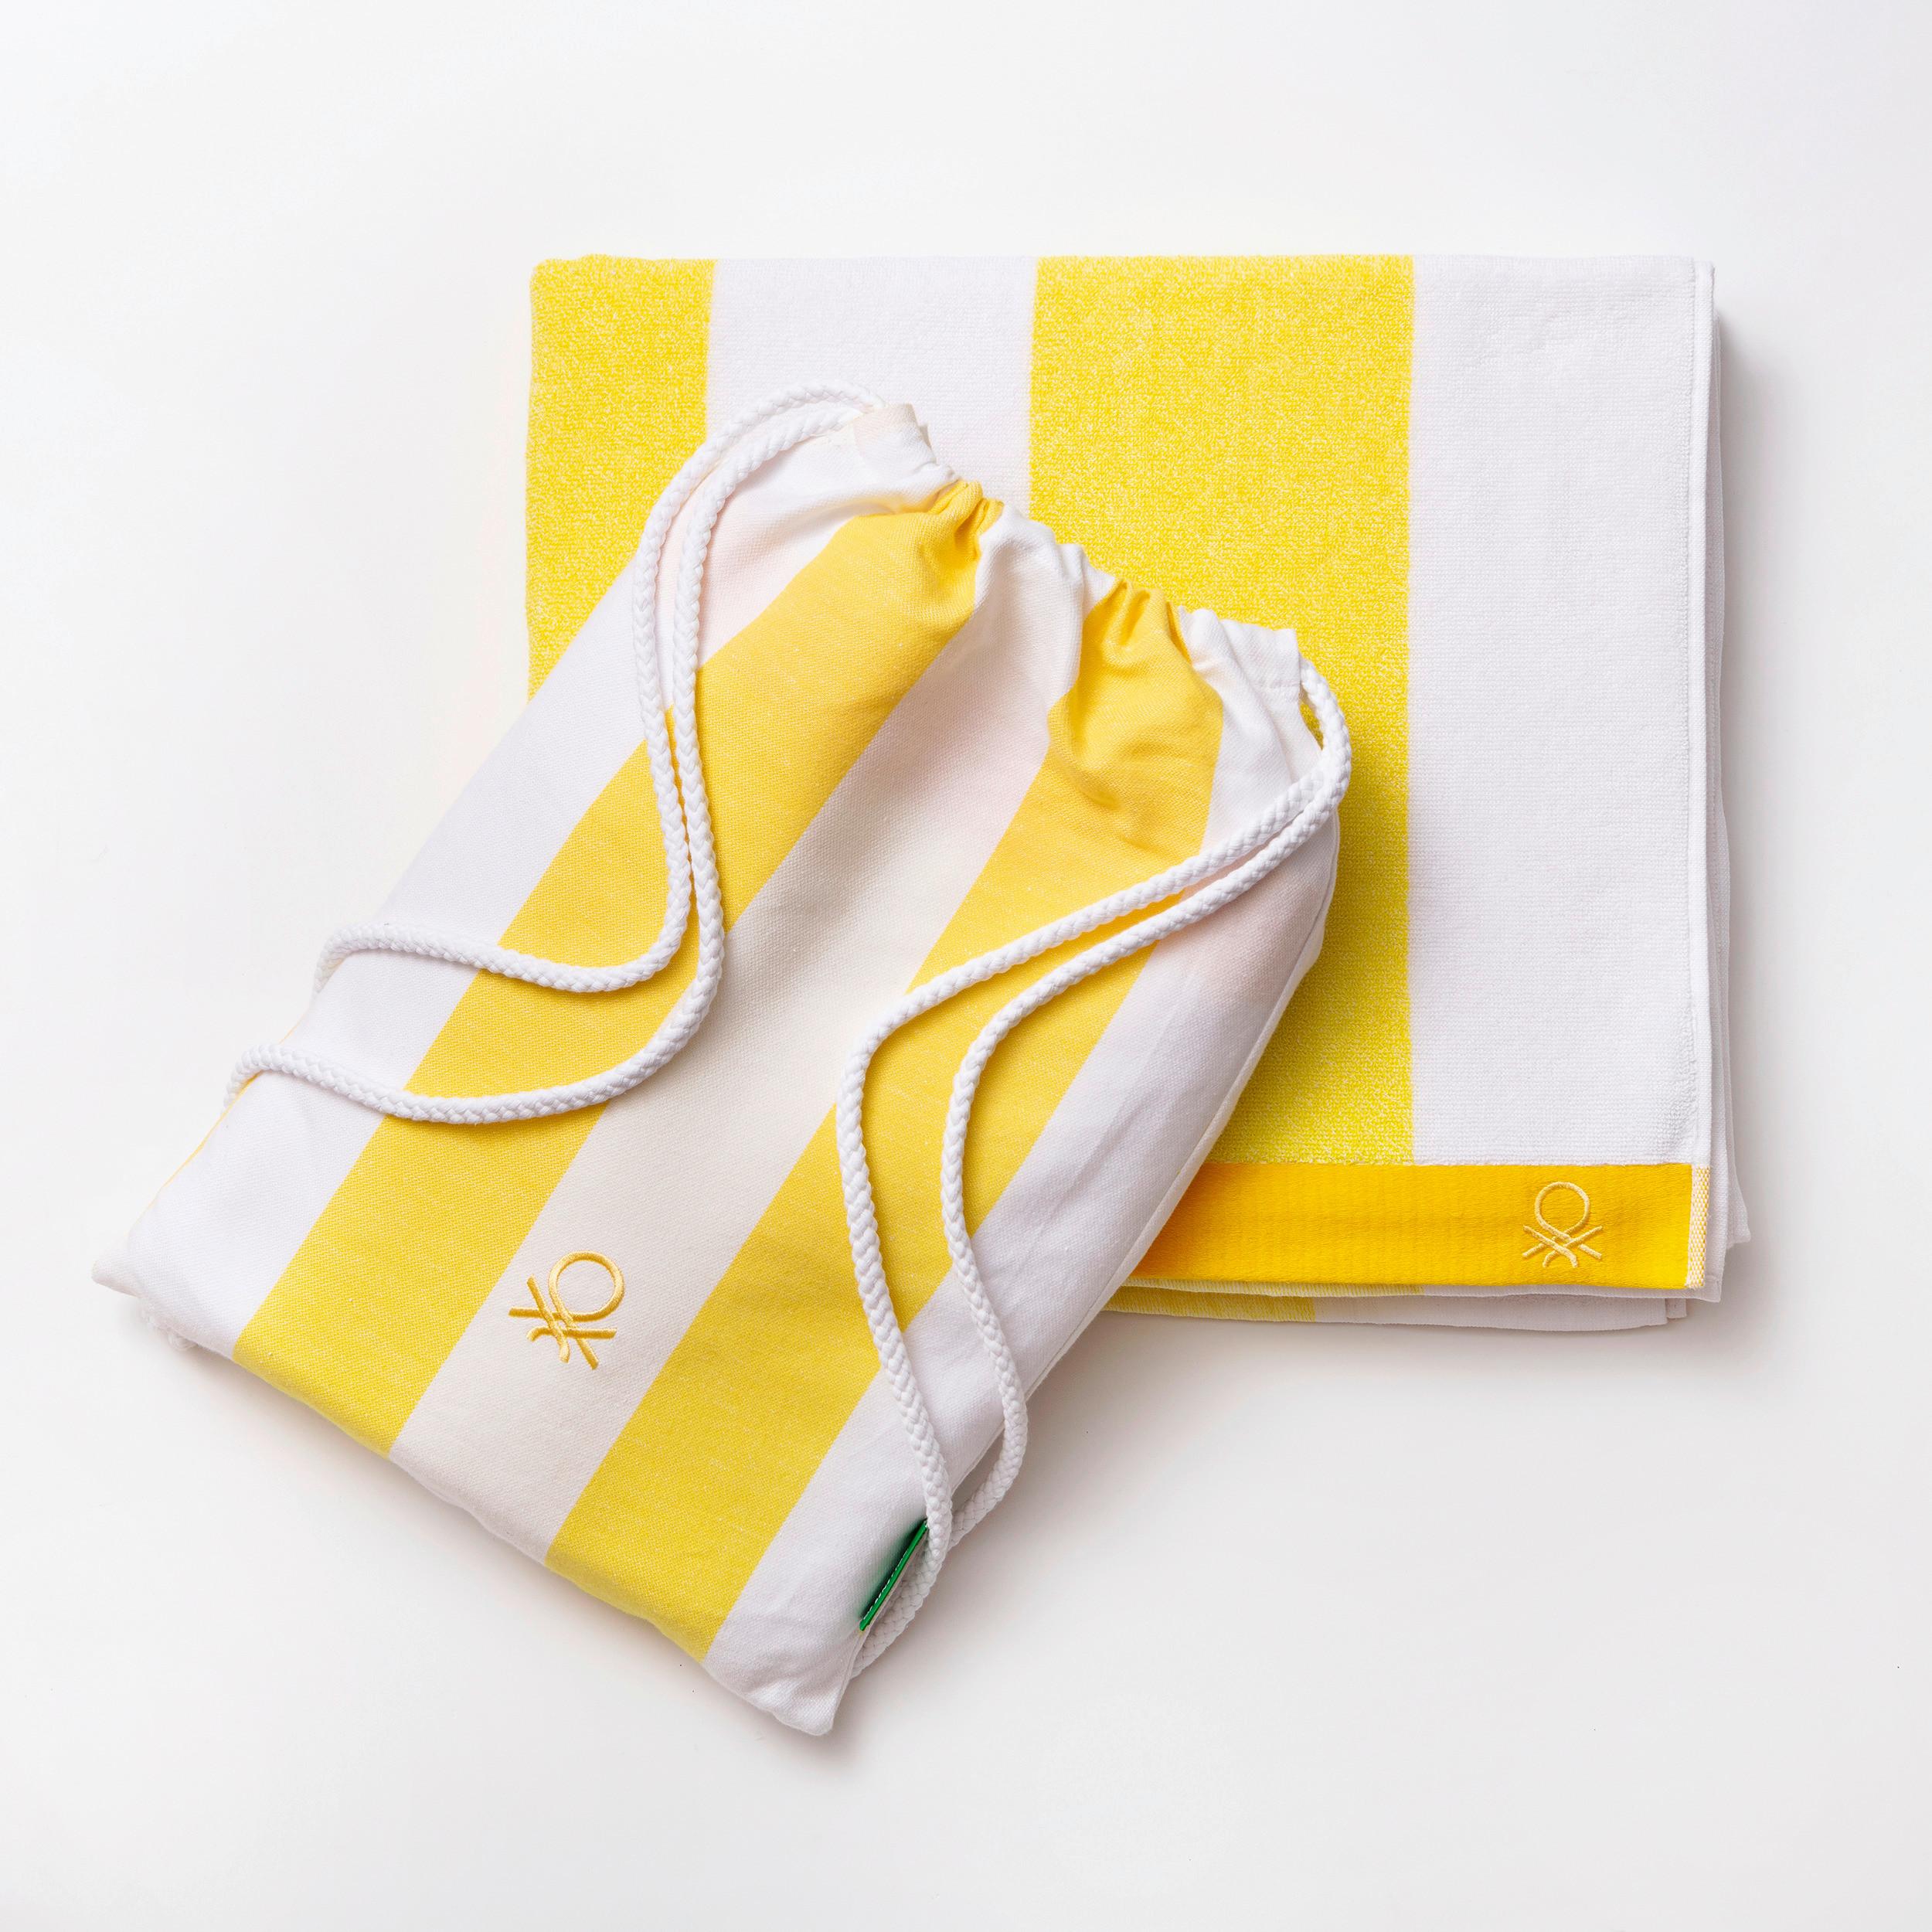 Strandtuch Baumwolle Gelb/Weiß 90x160 cm - Gelb/Weiß, Basics, Textil (90/160cm) - Benetton